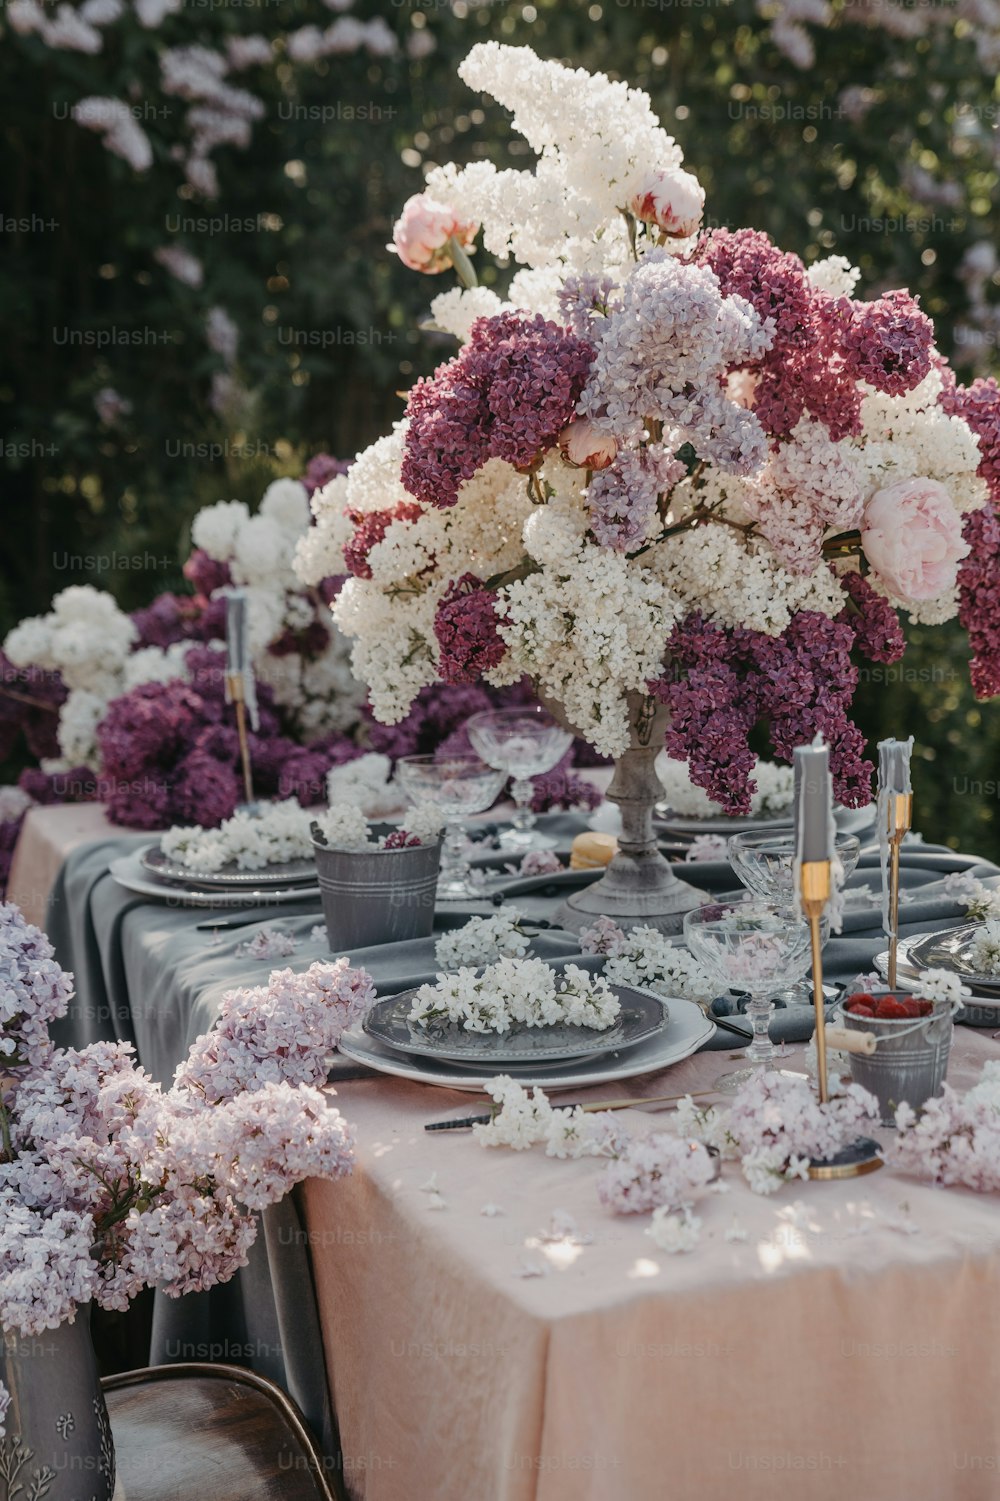 Se pone una mesa con platos y flores